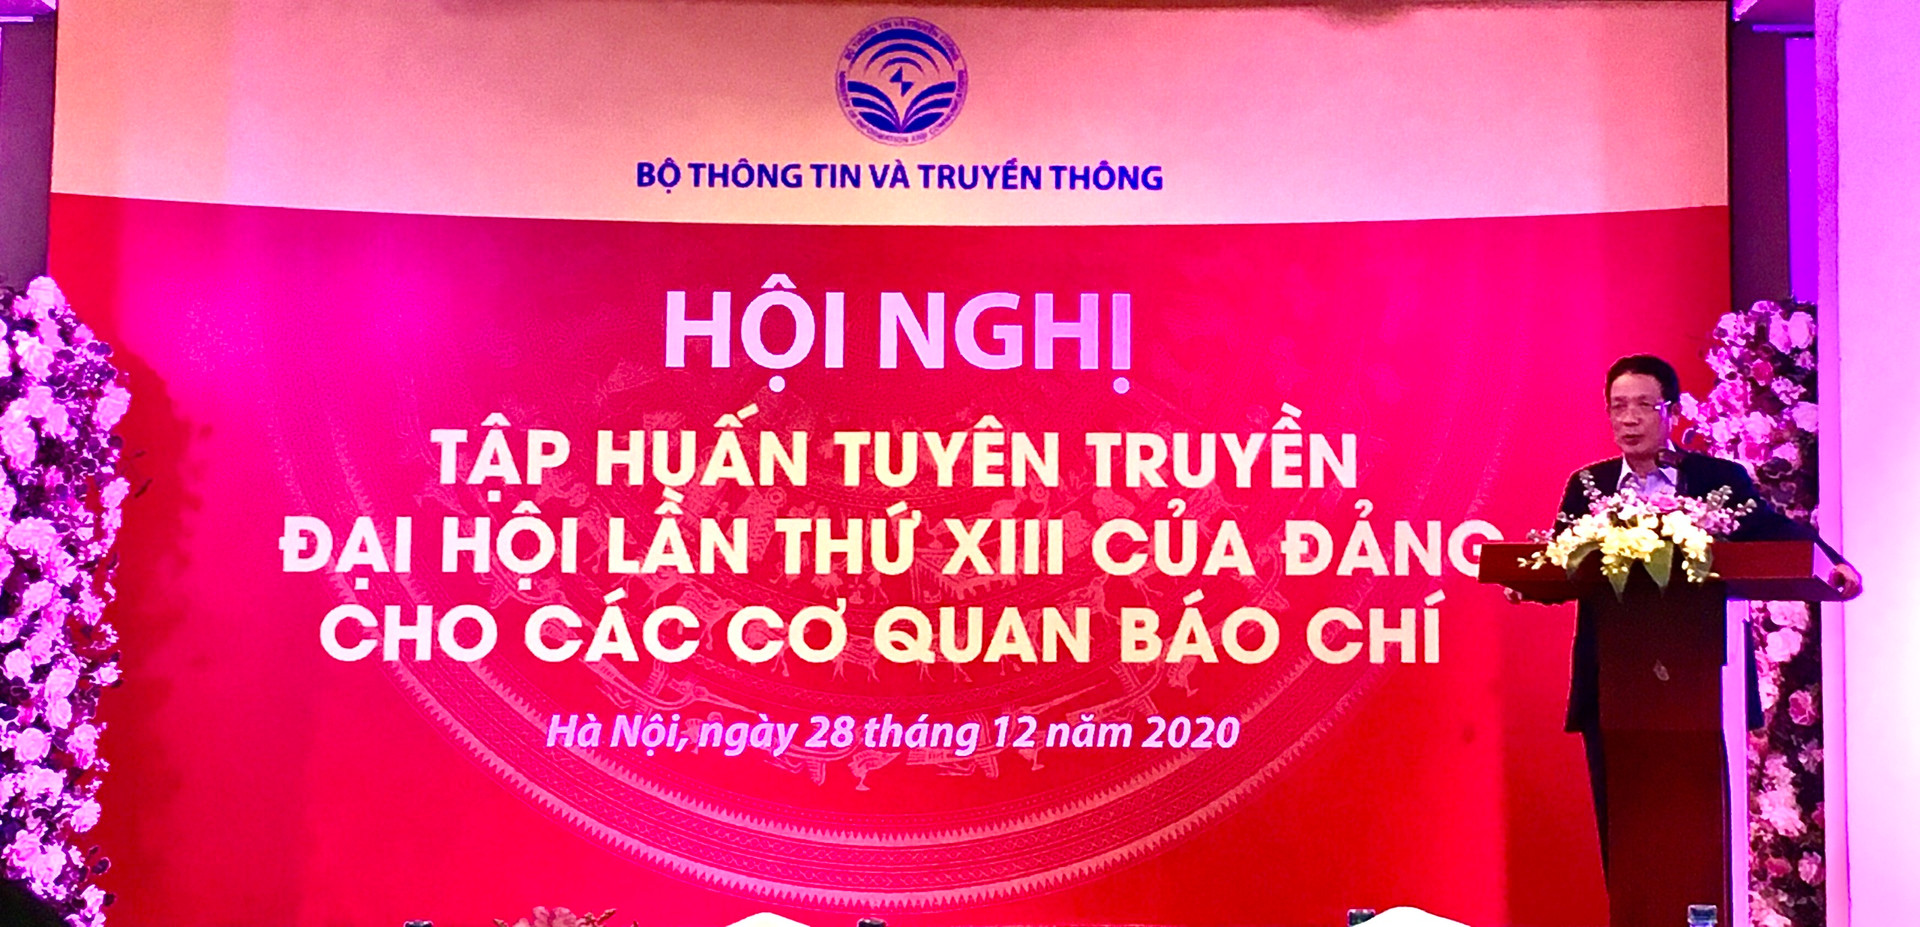 Giữa thế kỷ XXI Việt Nam trở thành một nước phát triển, theo định hướng XHCN - Ảnh 1.